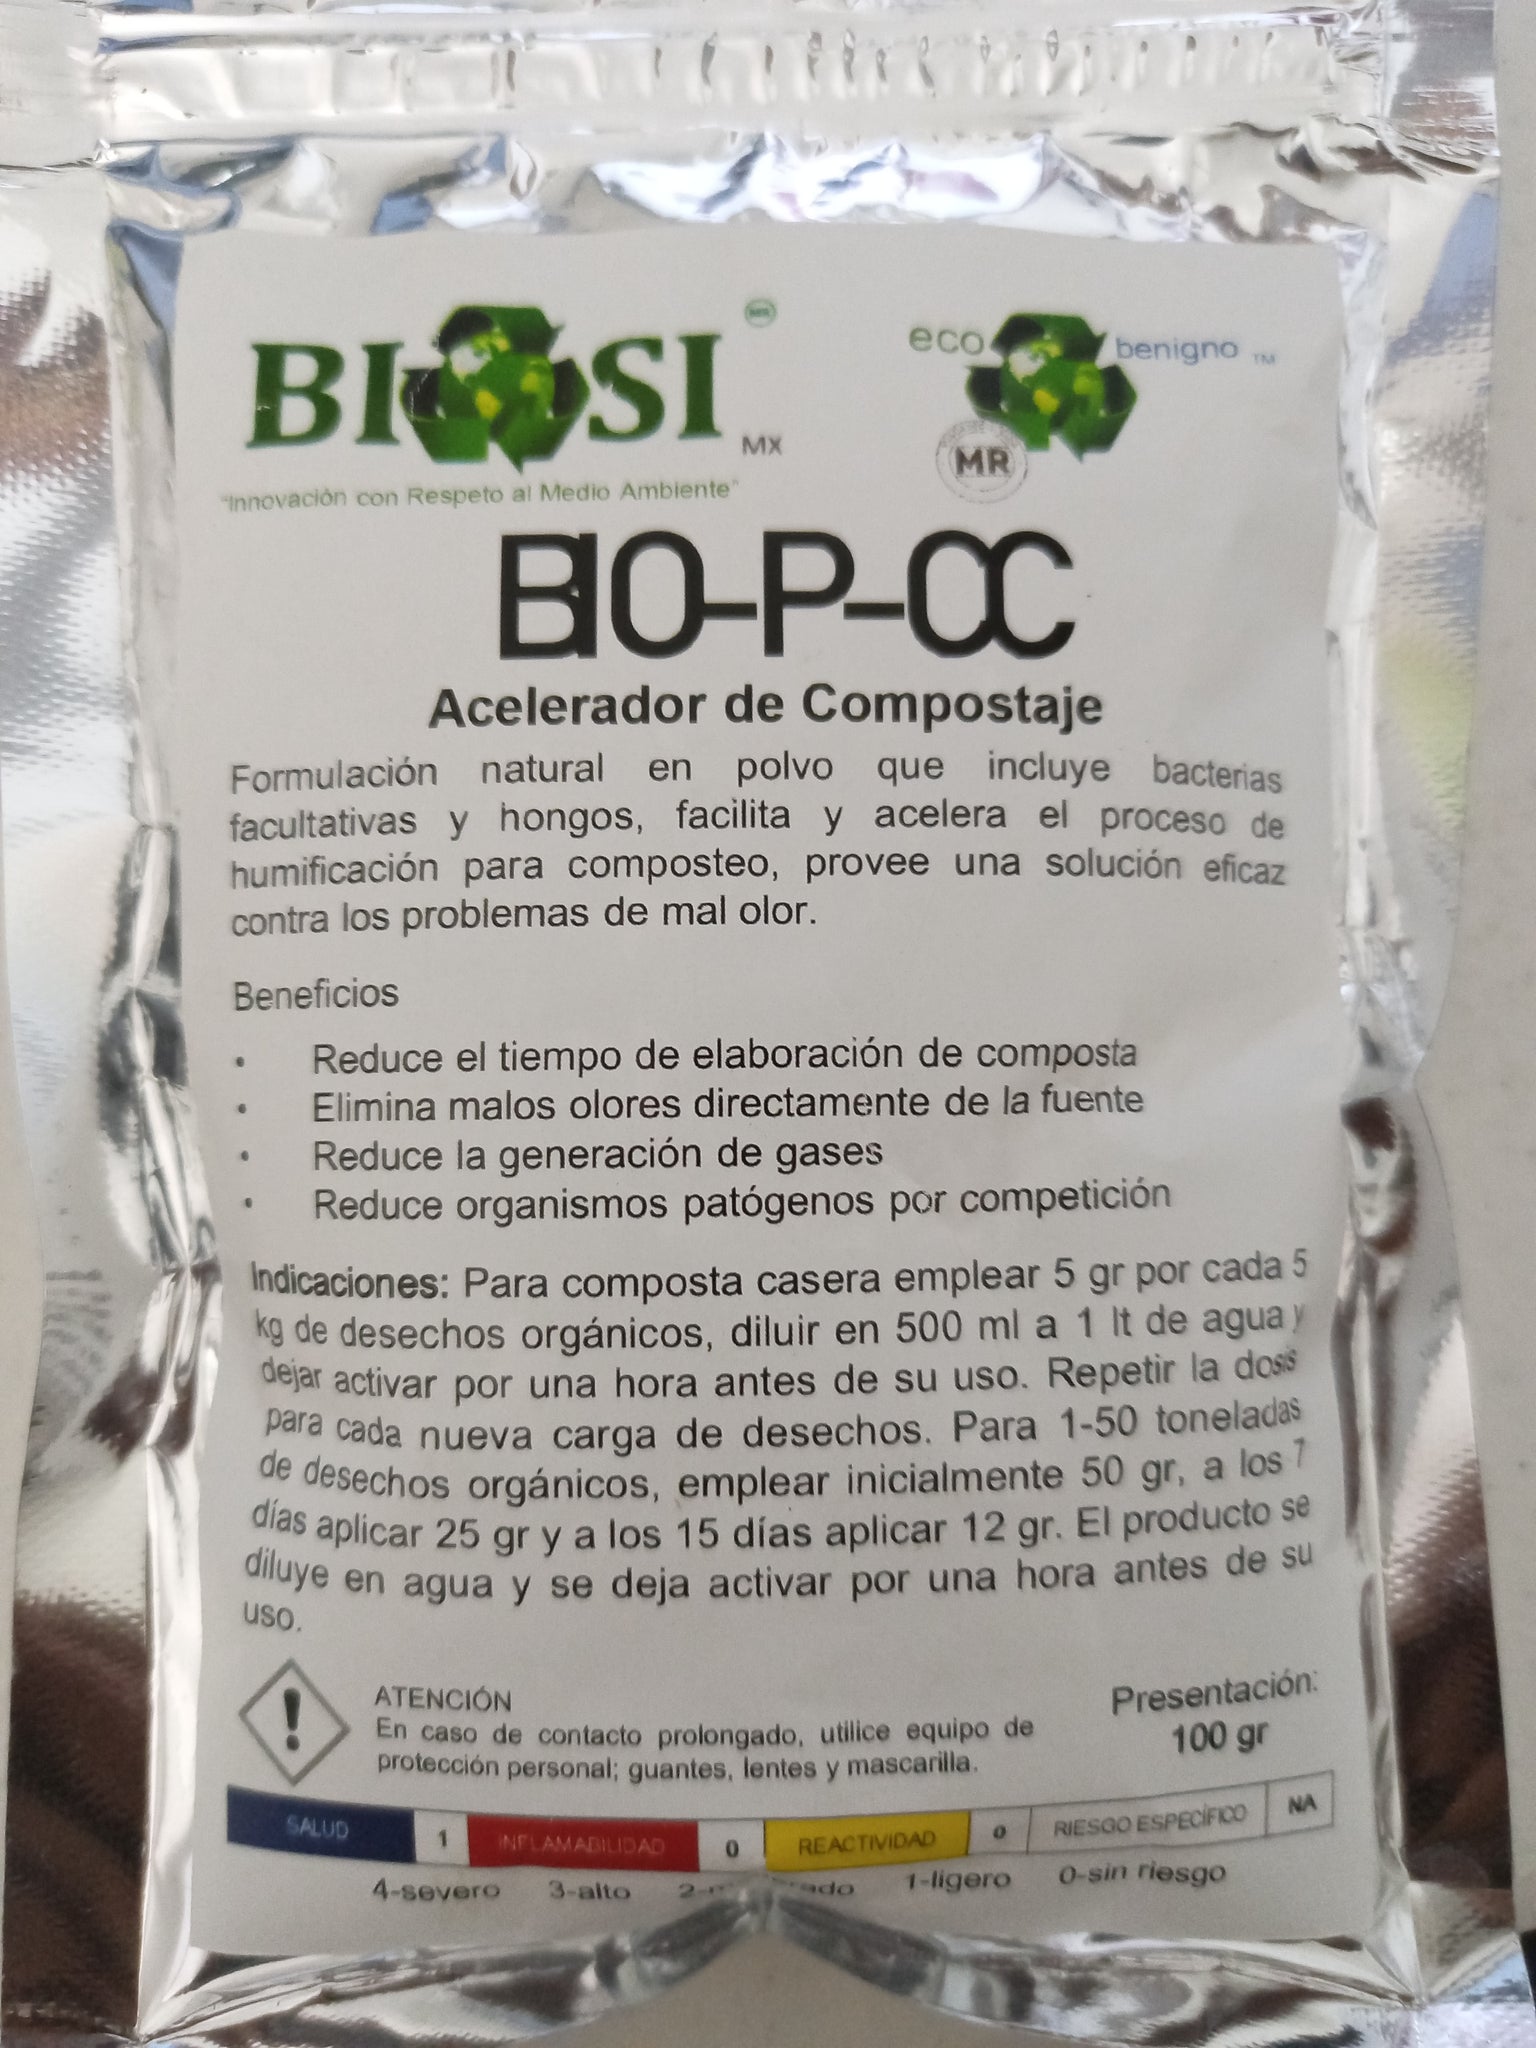 BIO- P-CC   Acelerador Composta y Degradación de Mortandad Pecuaria